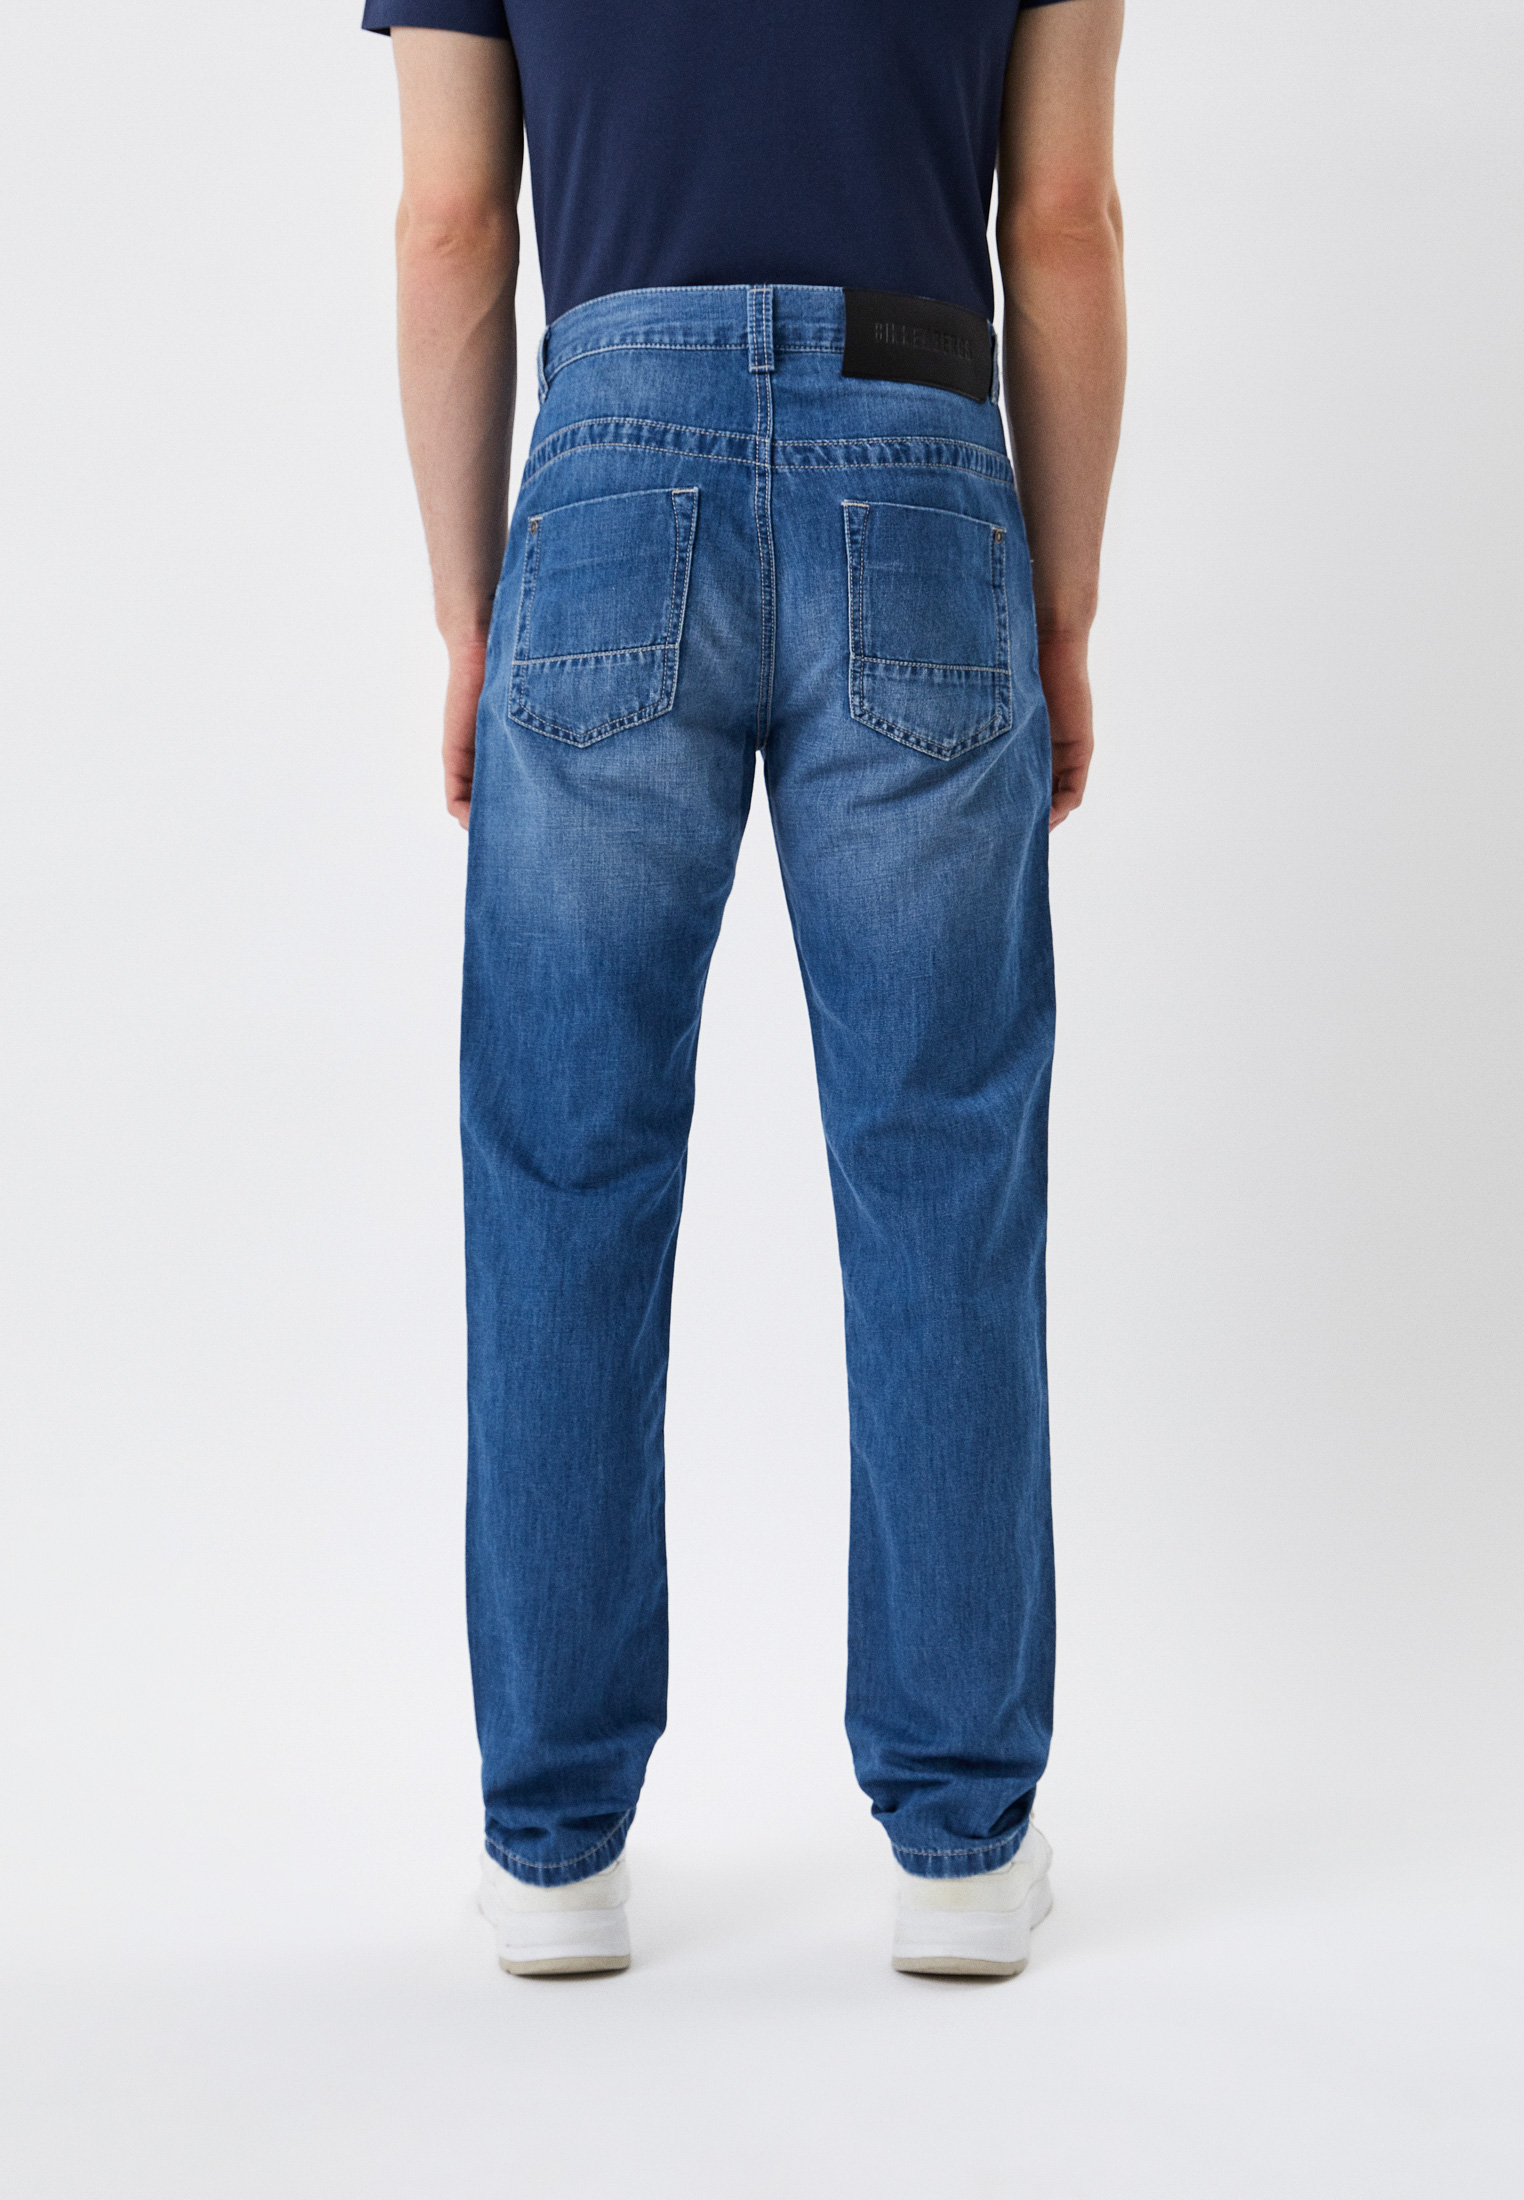 Мужские прямые джинсы Bikkembergs (Биккембергс) CQ10222T117A: изображение 3